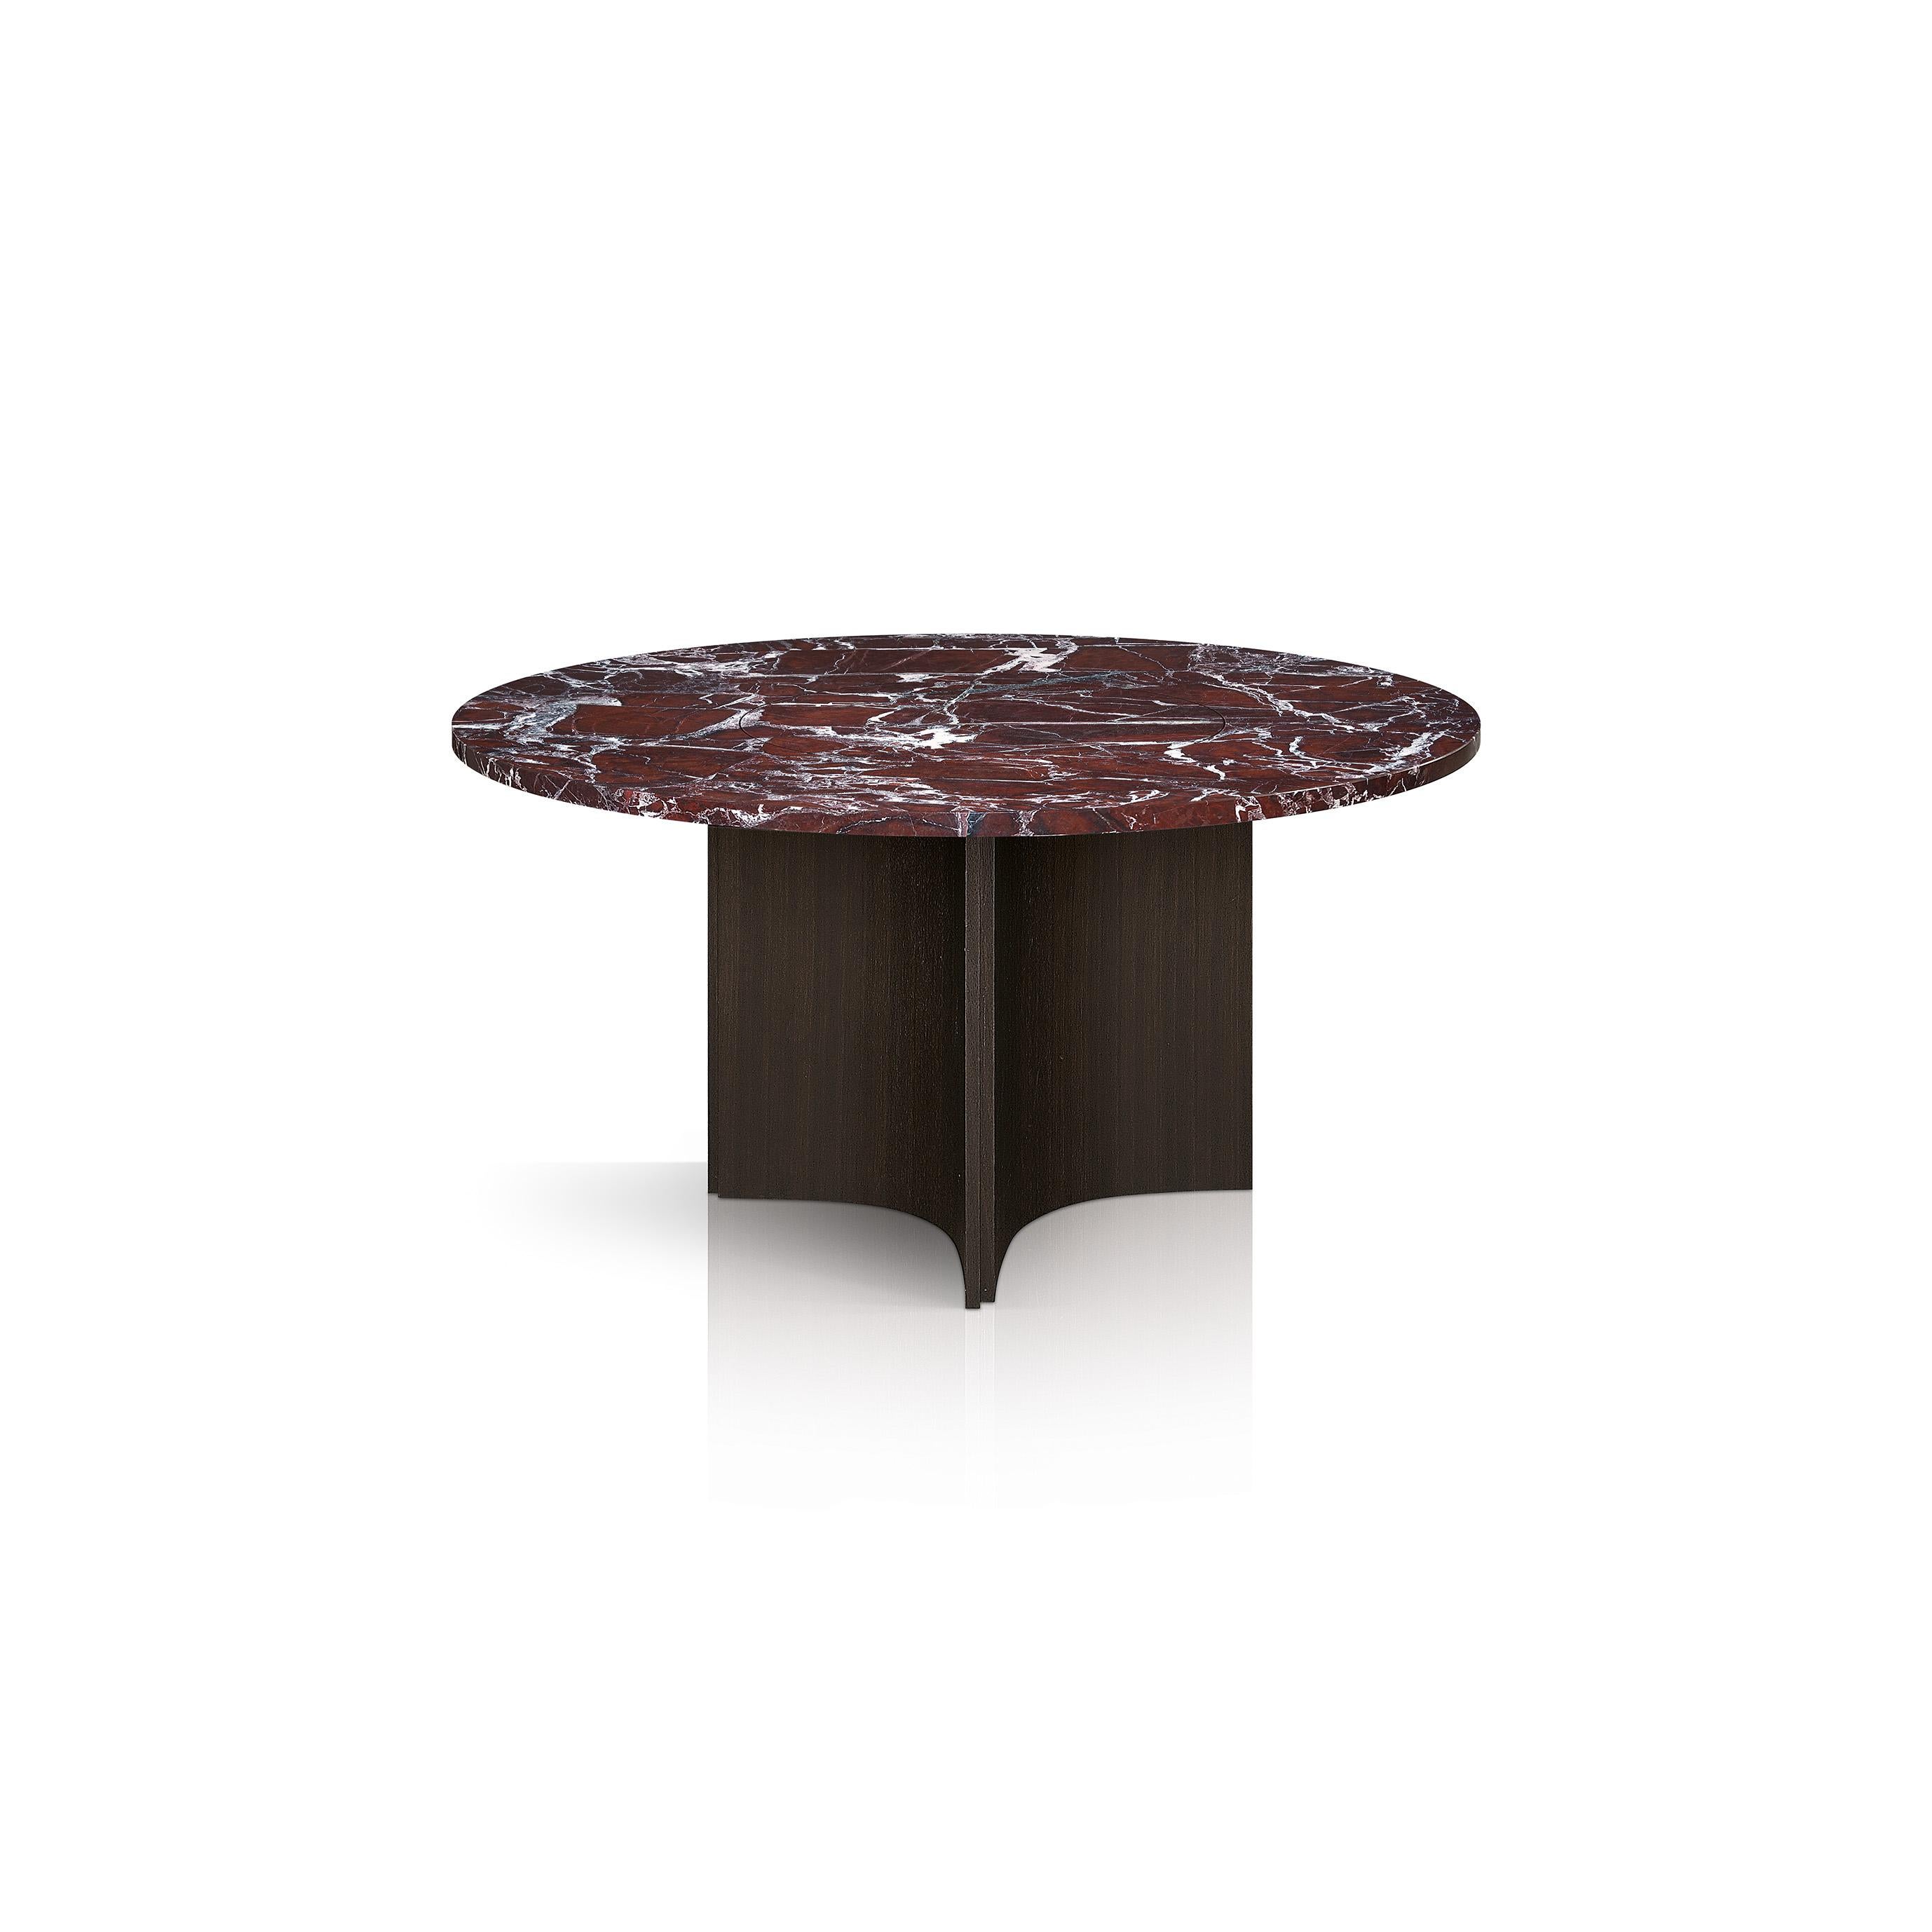 Im Mittelpunkt eines modernen und zeitgenössischen Esszimmers steht dieser Tisch mit einer auffälligen Platte aus weinrotem Levante-Marmor, die auf einem säulenartigen Untergestell aus eichenfurniertem Stahl steht. Als Teil der skulpturalen und